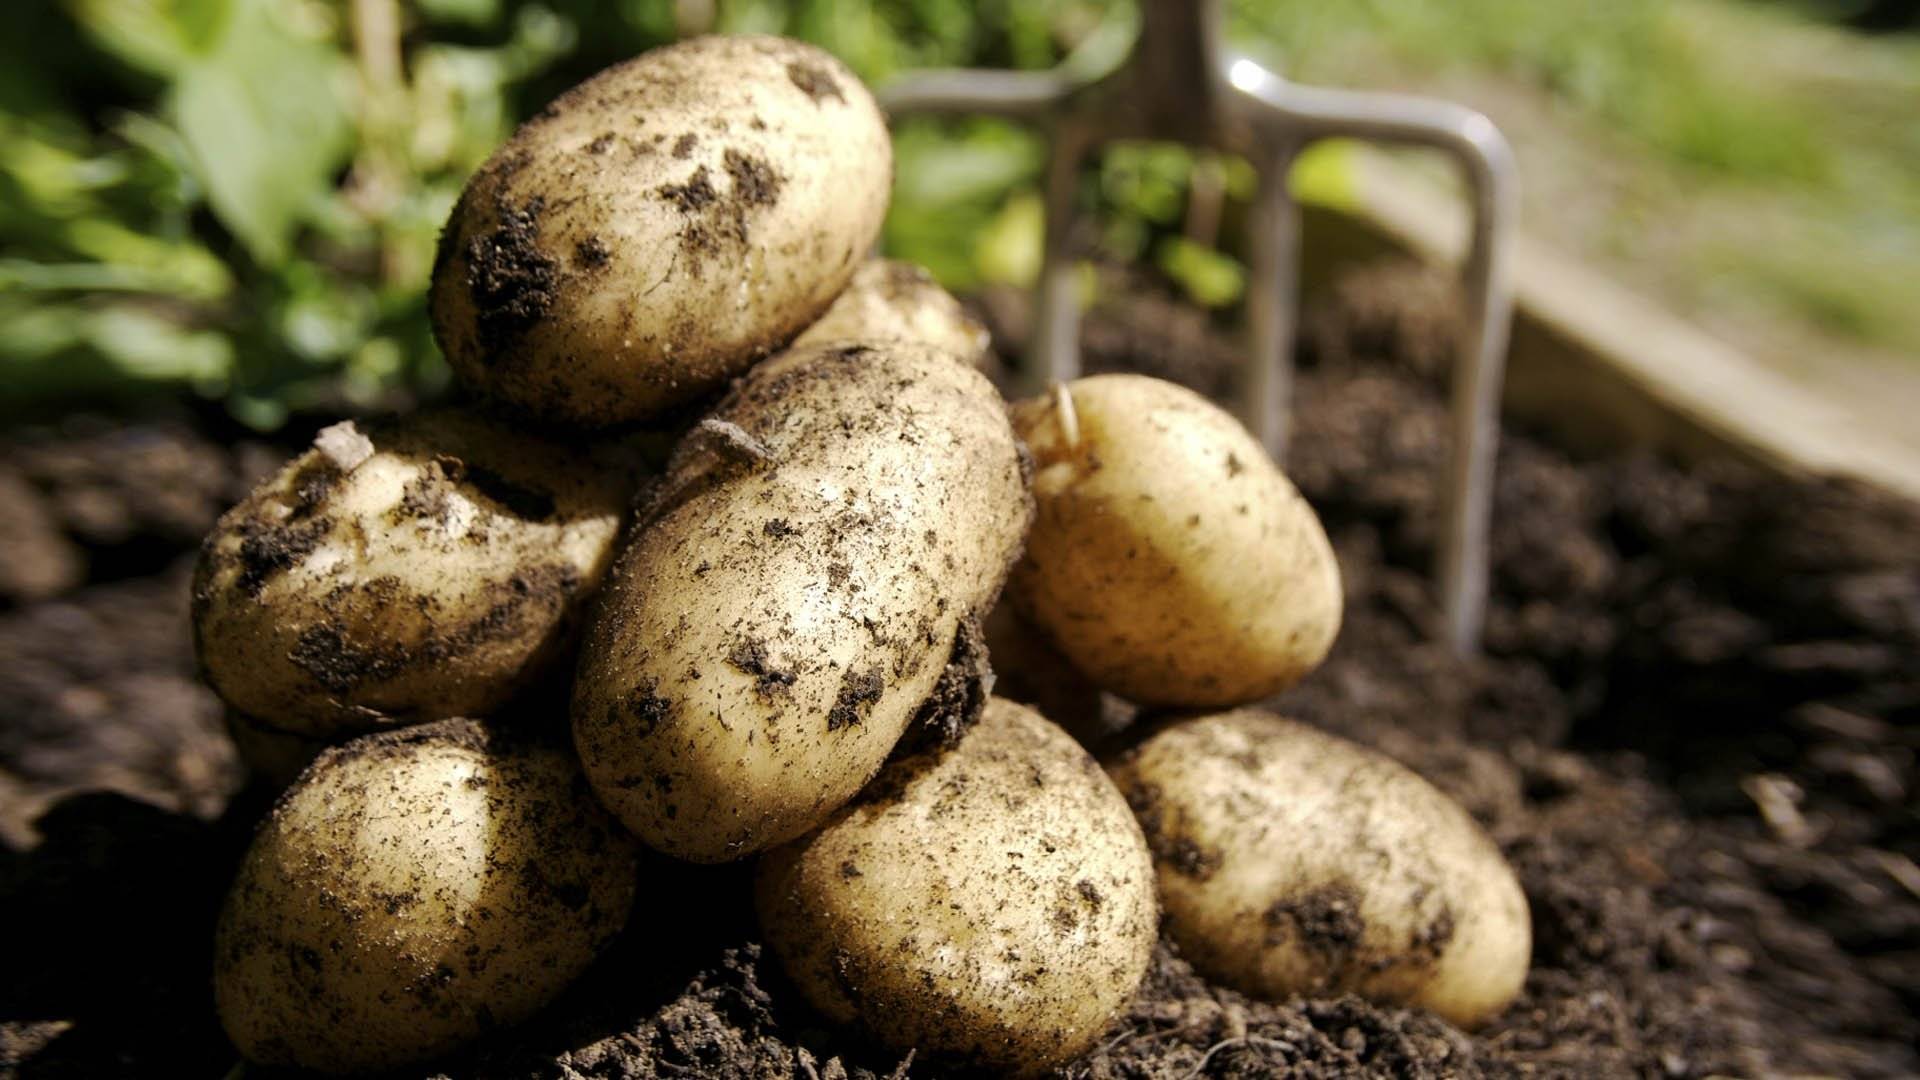 Ультраранний картофель «фермер»: описание сорта, фото, подробная характеристика